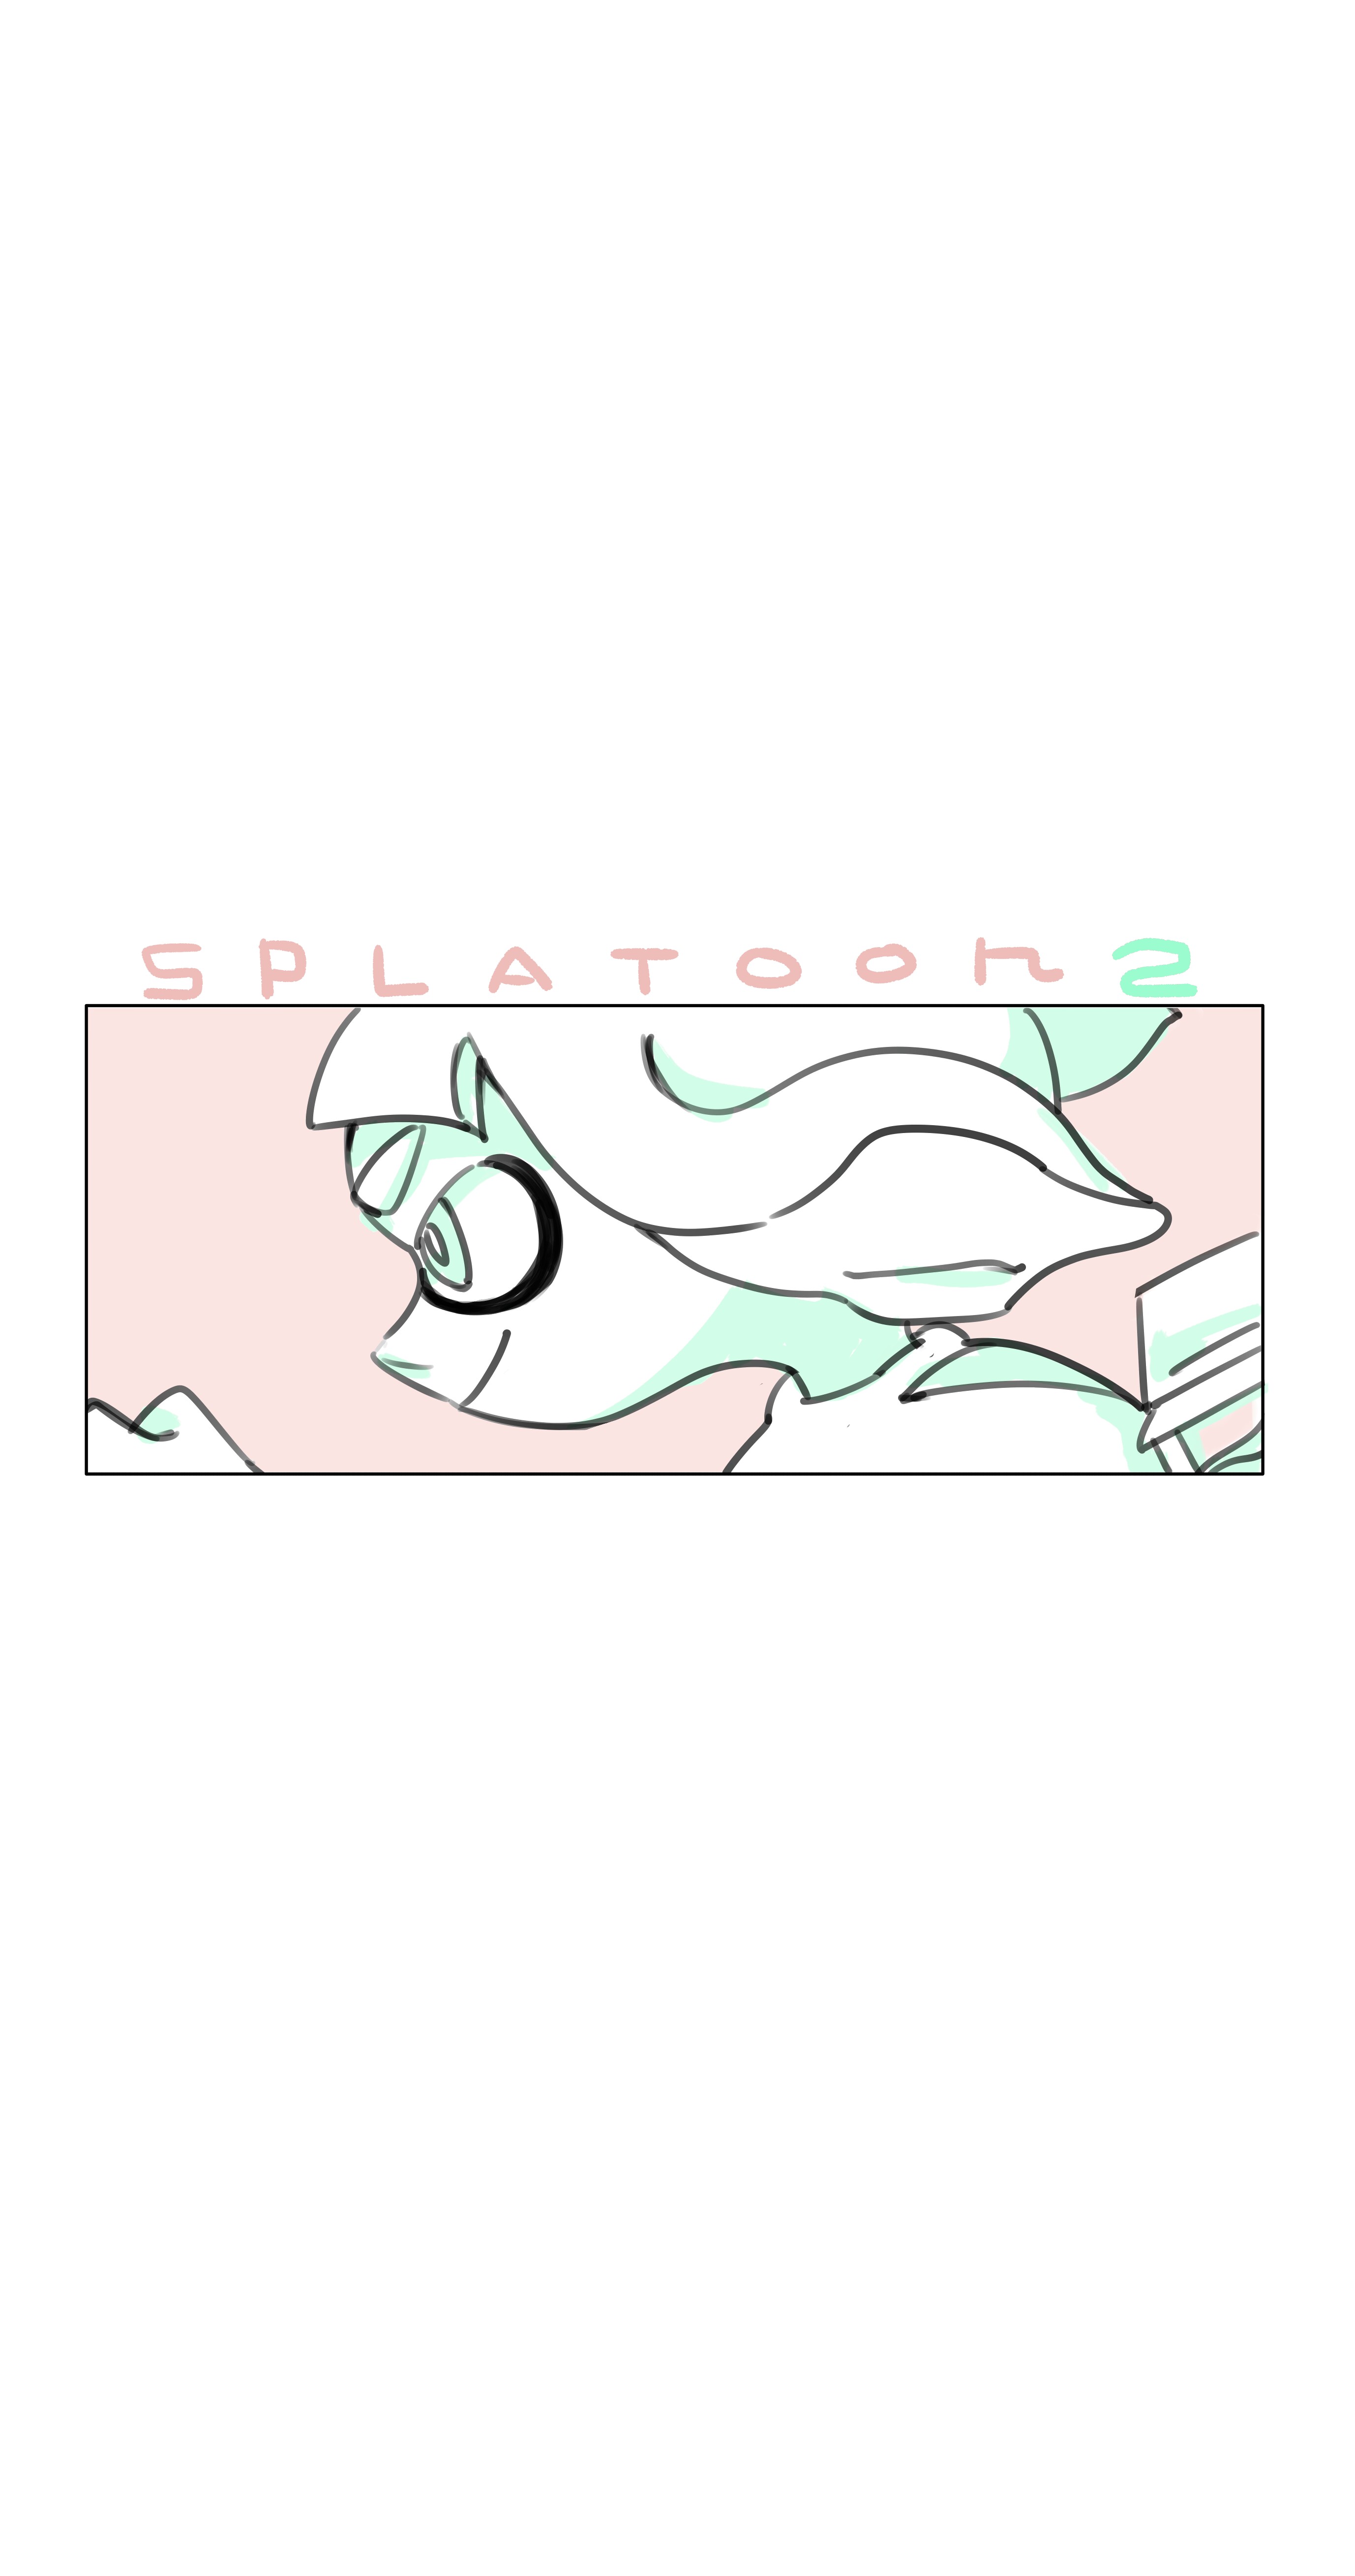 Splatoon の人気イラストやマンガ 画像 創作sns Galleria ギャレリア